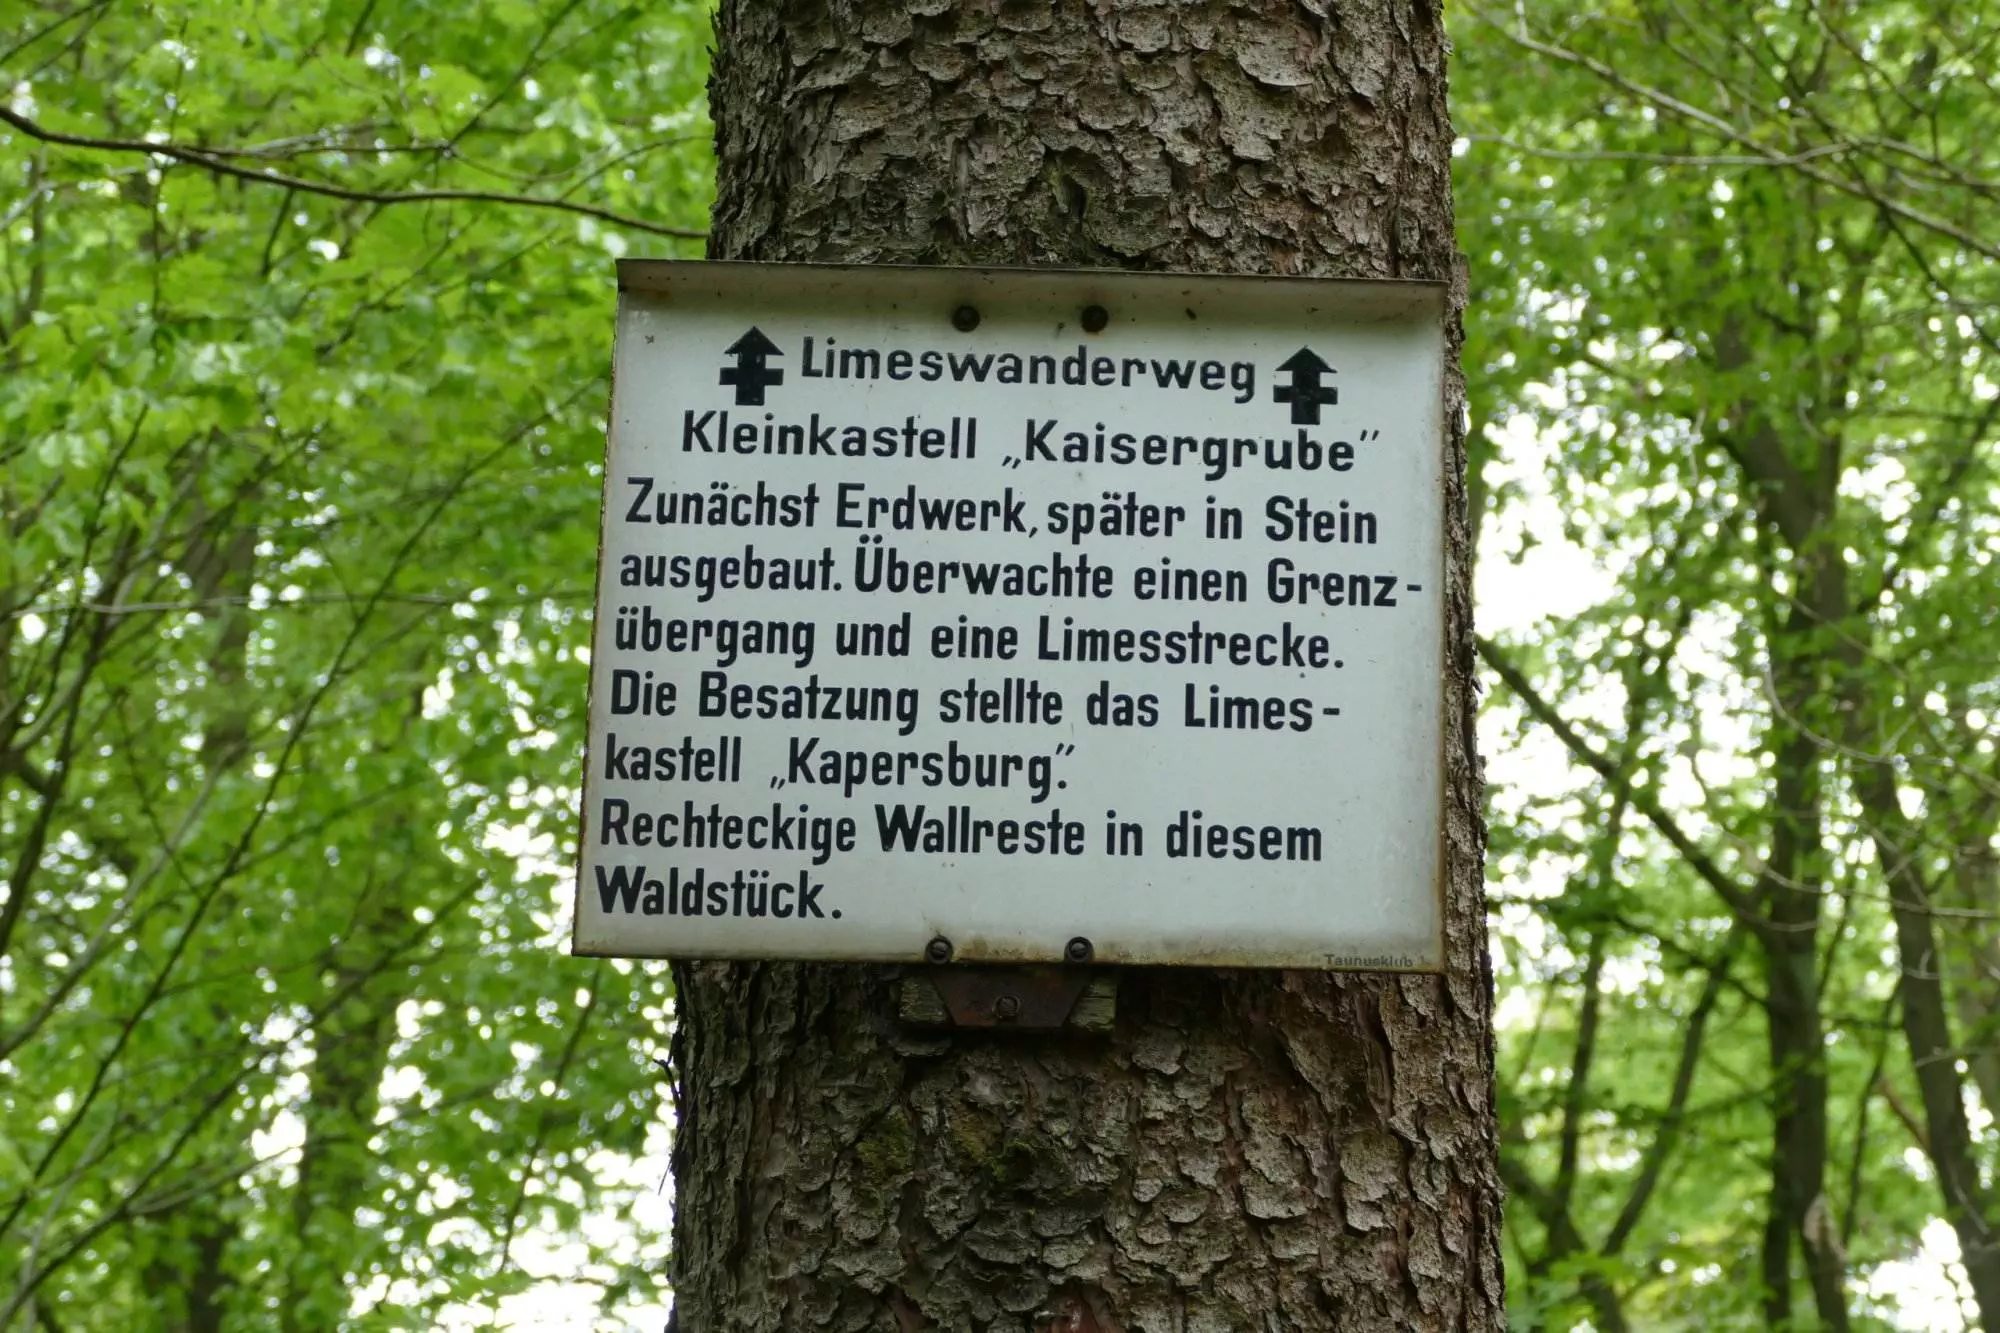 Ein Schild an einem Baum im Wald.